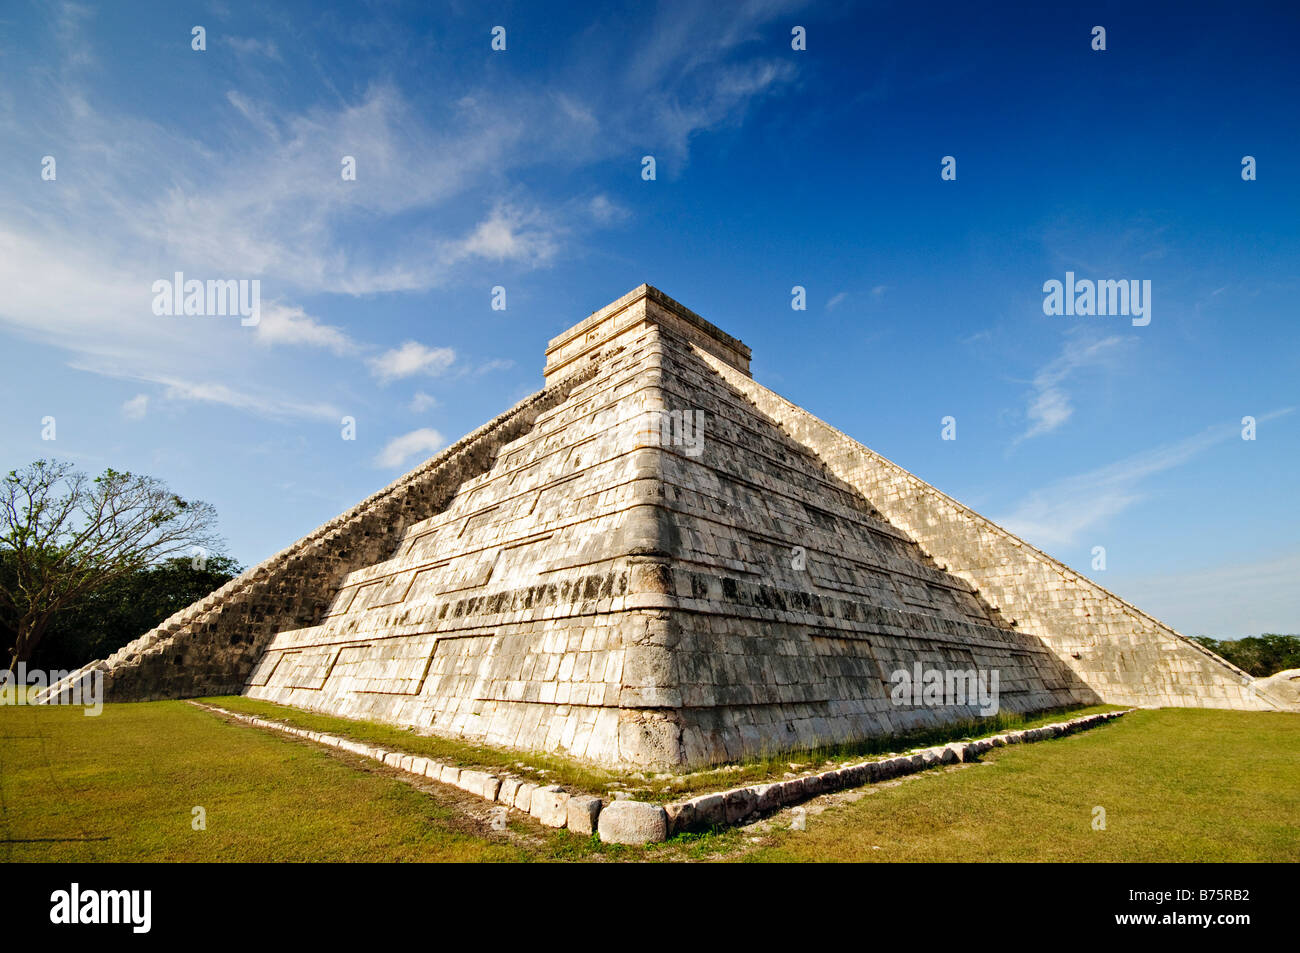 CHICHEN ITZA, Mexique - El Castillo (également connu sous le nom de Temple de Kuklcan) aux ruines mayas anciennes de Chichen Itza, Yucatan, Mexique 081216092848 4416x.tif. Chichen Itza, situé sur la péninsule du Yucatan au Mexique, est un site archéologique important présentant la riche histoire et les connaissances scientifiques avancées de la civilisation maya antique. Il est plus connu pour la Pyramide Kukulkan, ou « El Castillo », une structure à quatre côtés avec 91 marches de chaque côté, culminant en une seule étape au sommet pour représenter les 365 jours de l'année solaire. Banque D'Images